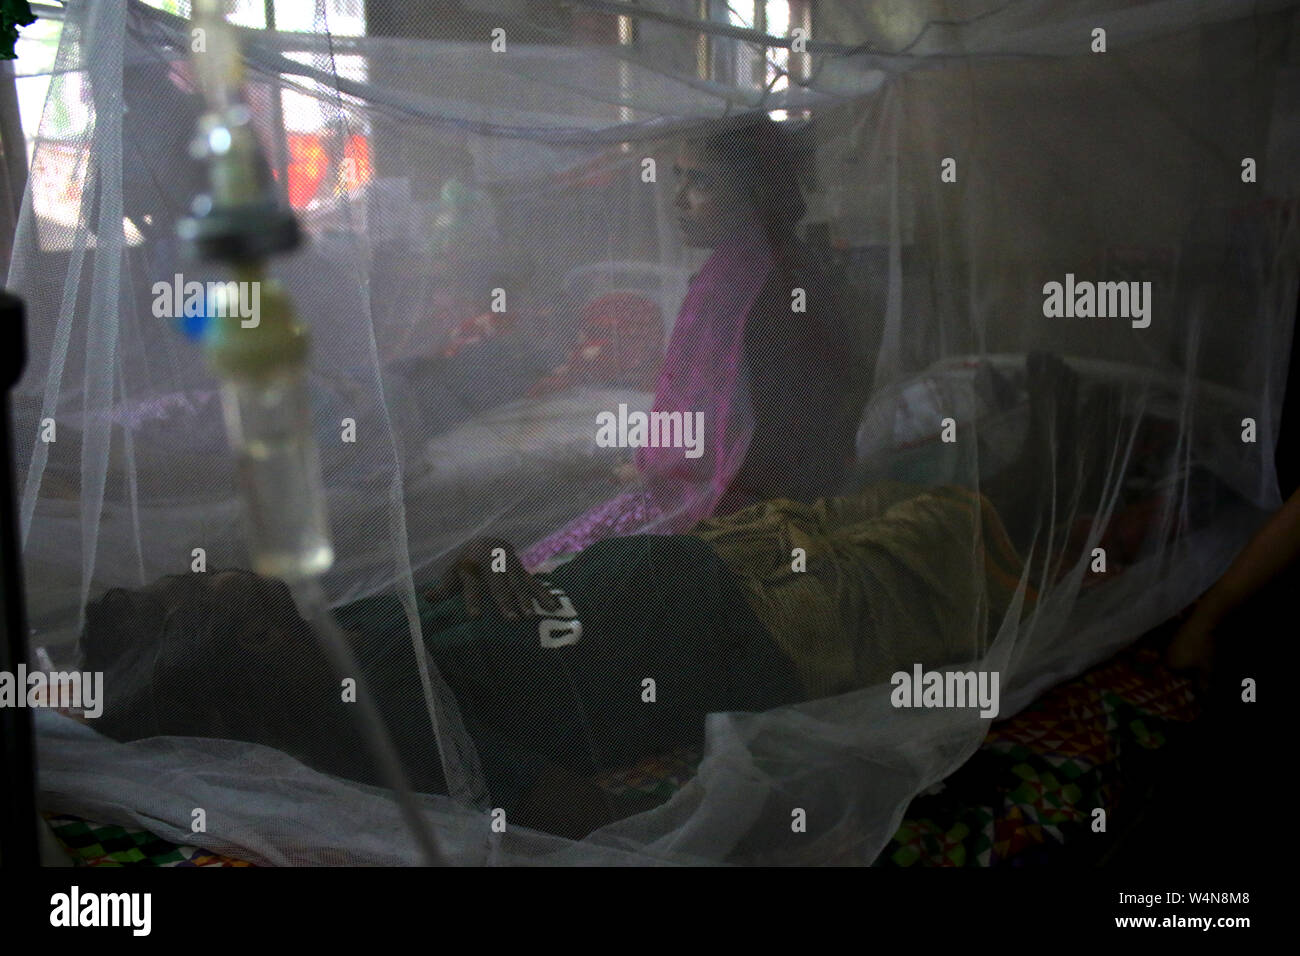 Pour aider à lutter contre la propagation de la dengue, des moustiquaires ont été mis en place dans une paroisse à l'hôpital médical de Shaheed Suhrawardy.cas de Dengue ont été à la hausse, en particulier dans la capitale depuis mars de cette année. Banque D'Images